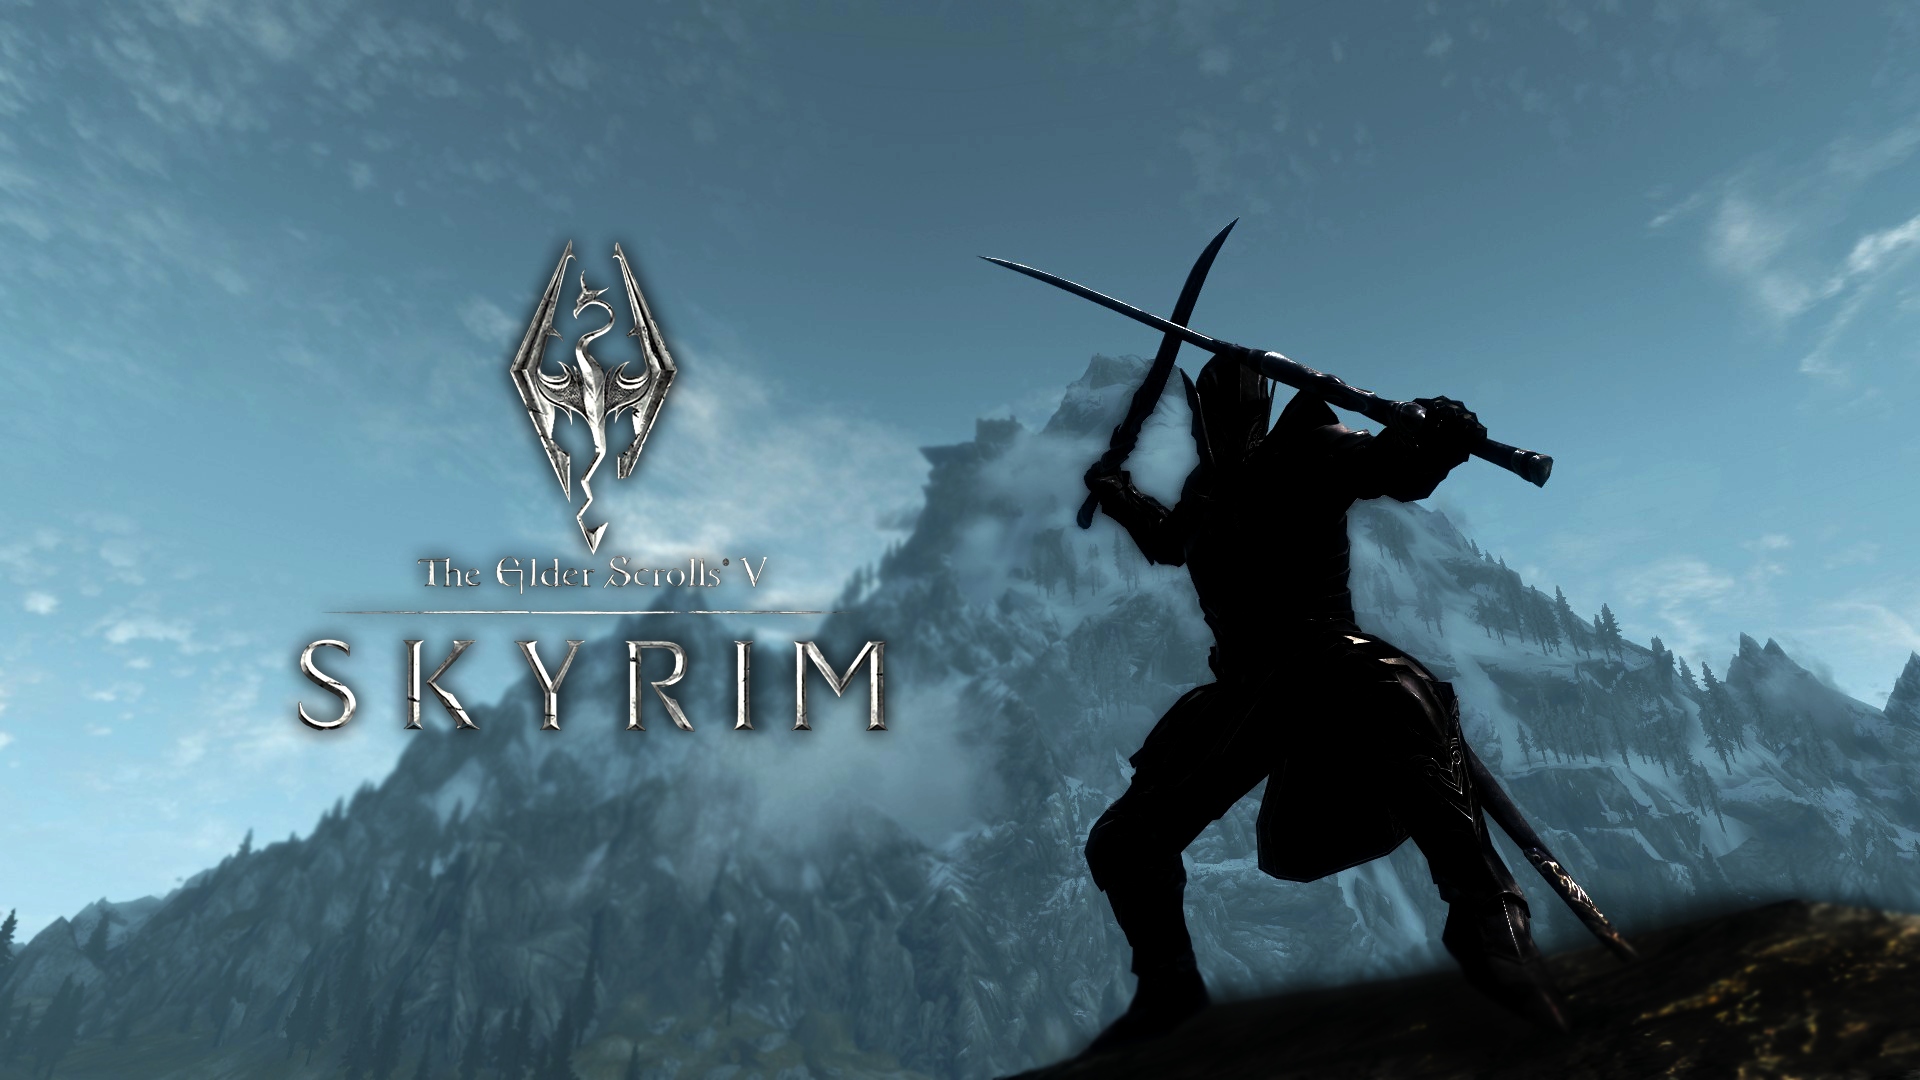 Các fan hâm mộ của trò chơi Skyrim hãy cùng khám phá bộ sưu tập hình nền đầy đủ và đa dạng nhất! Với nhiều hình ảnh độc đáo, bạn sẽ có rất nhiều lựa chọn để cải thiện thiết bị của mình. Hãy truy cập ngay để khám phá thế giới của Skyrim và lấy cảm hứng từ nó.